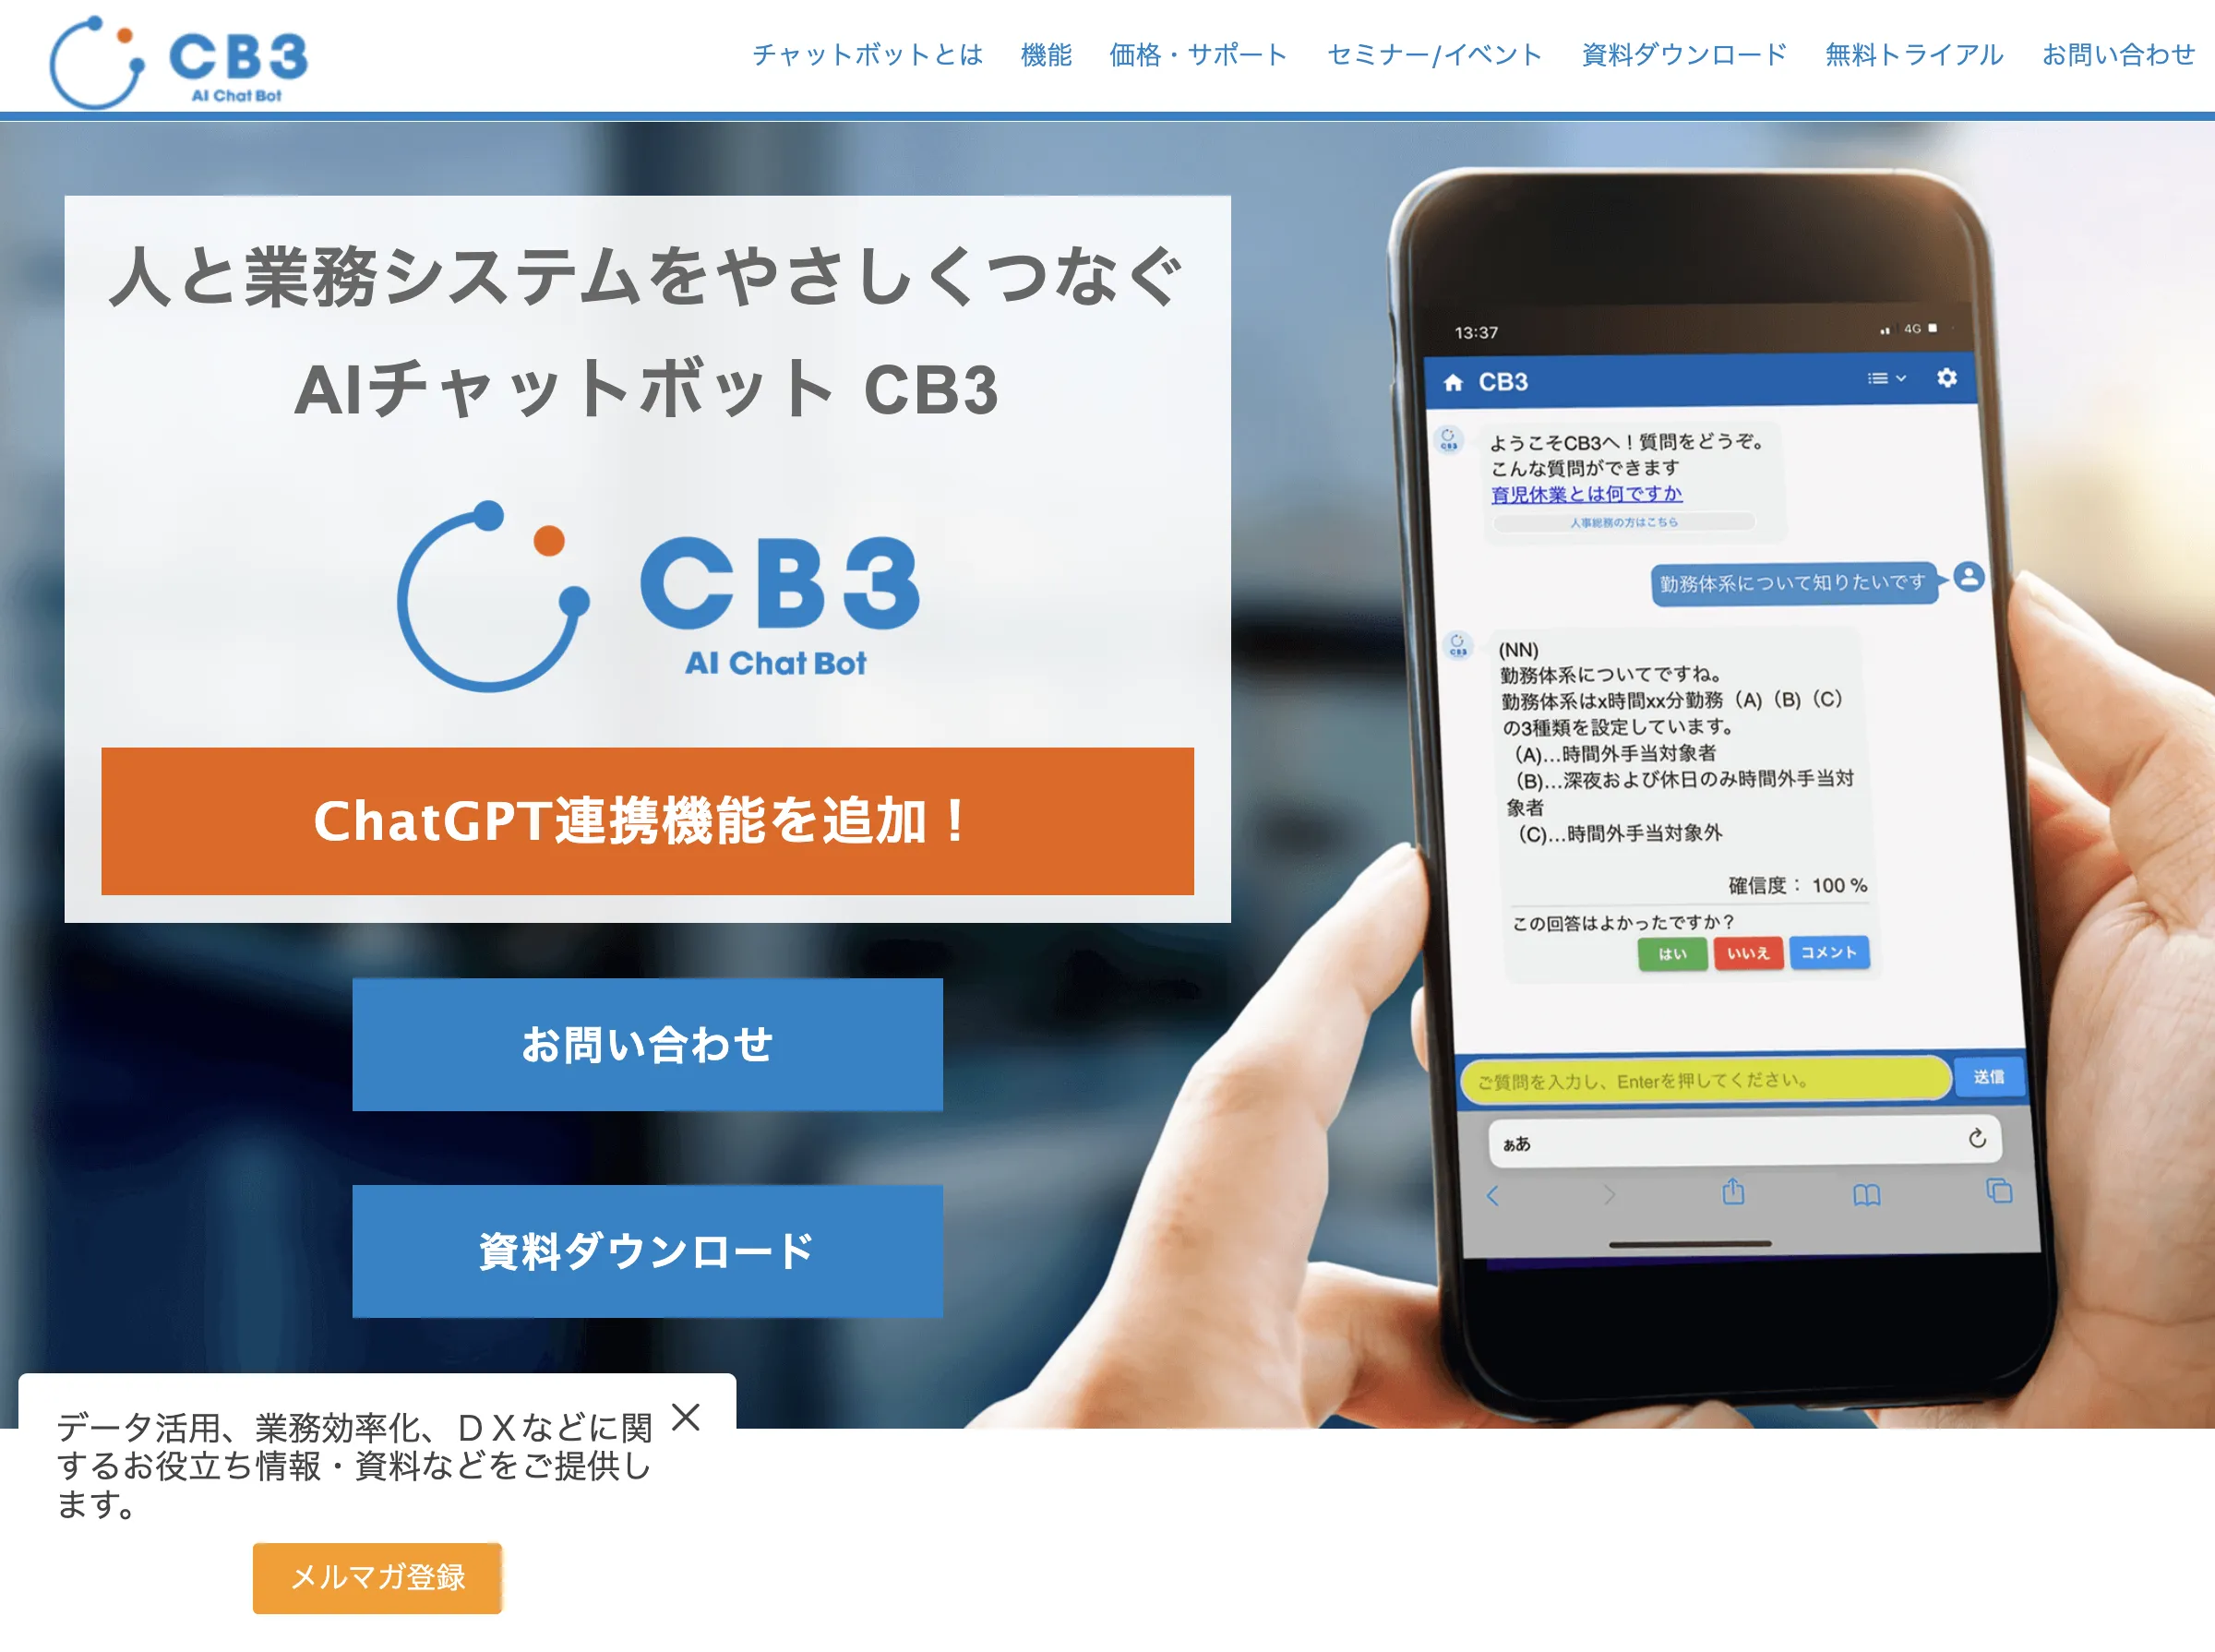 ChatGPT連携 チャットボットCB3の紹介画像